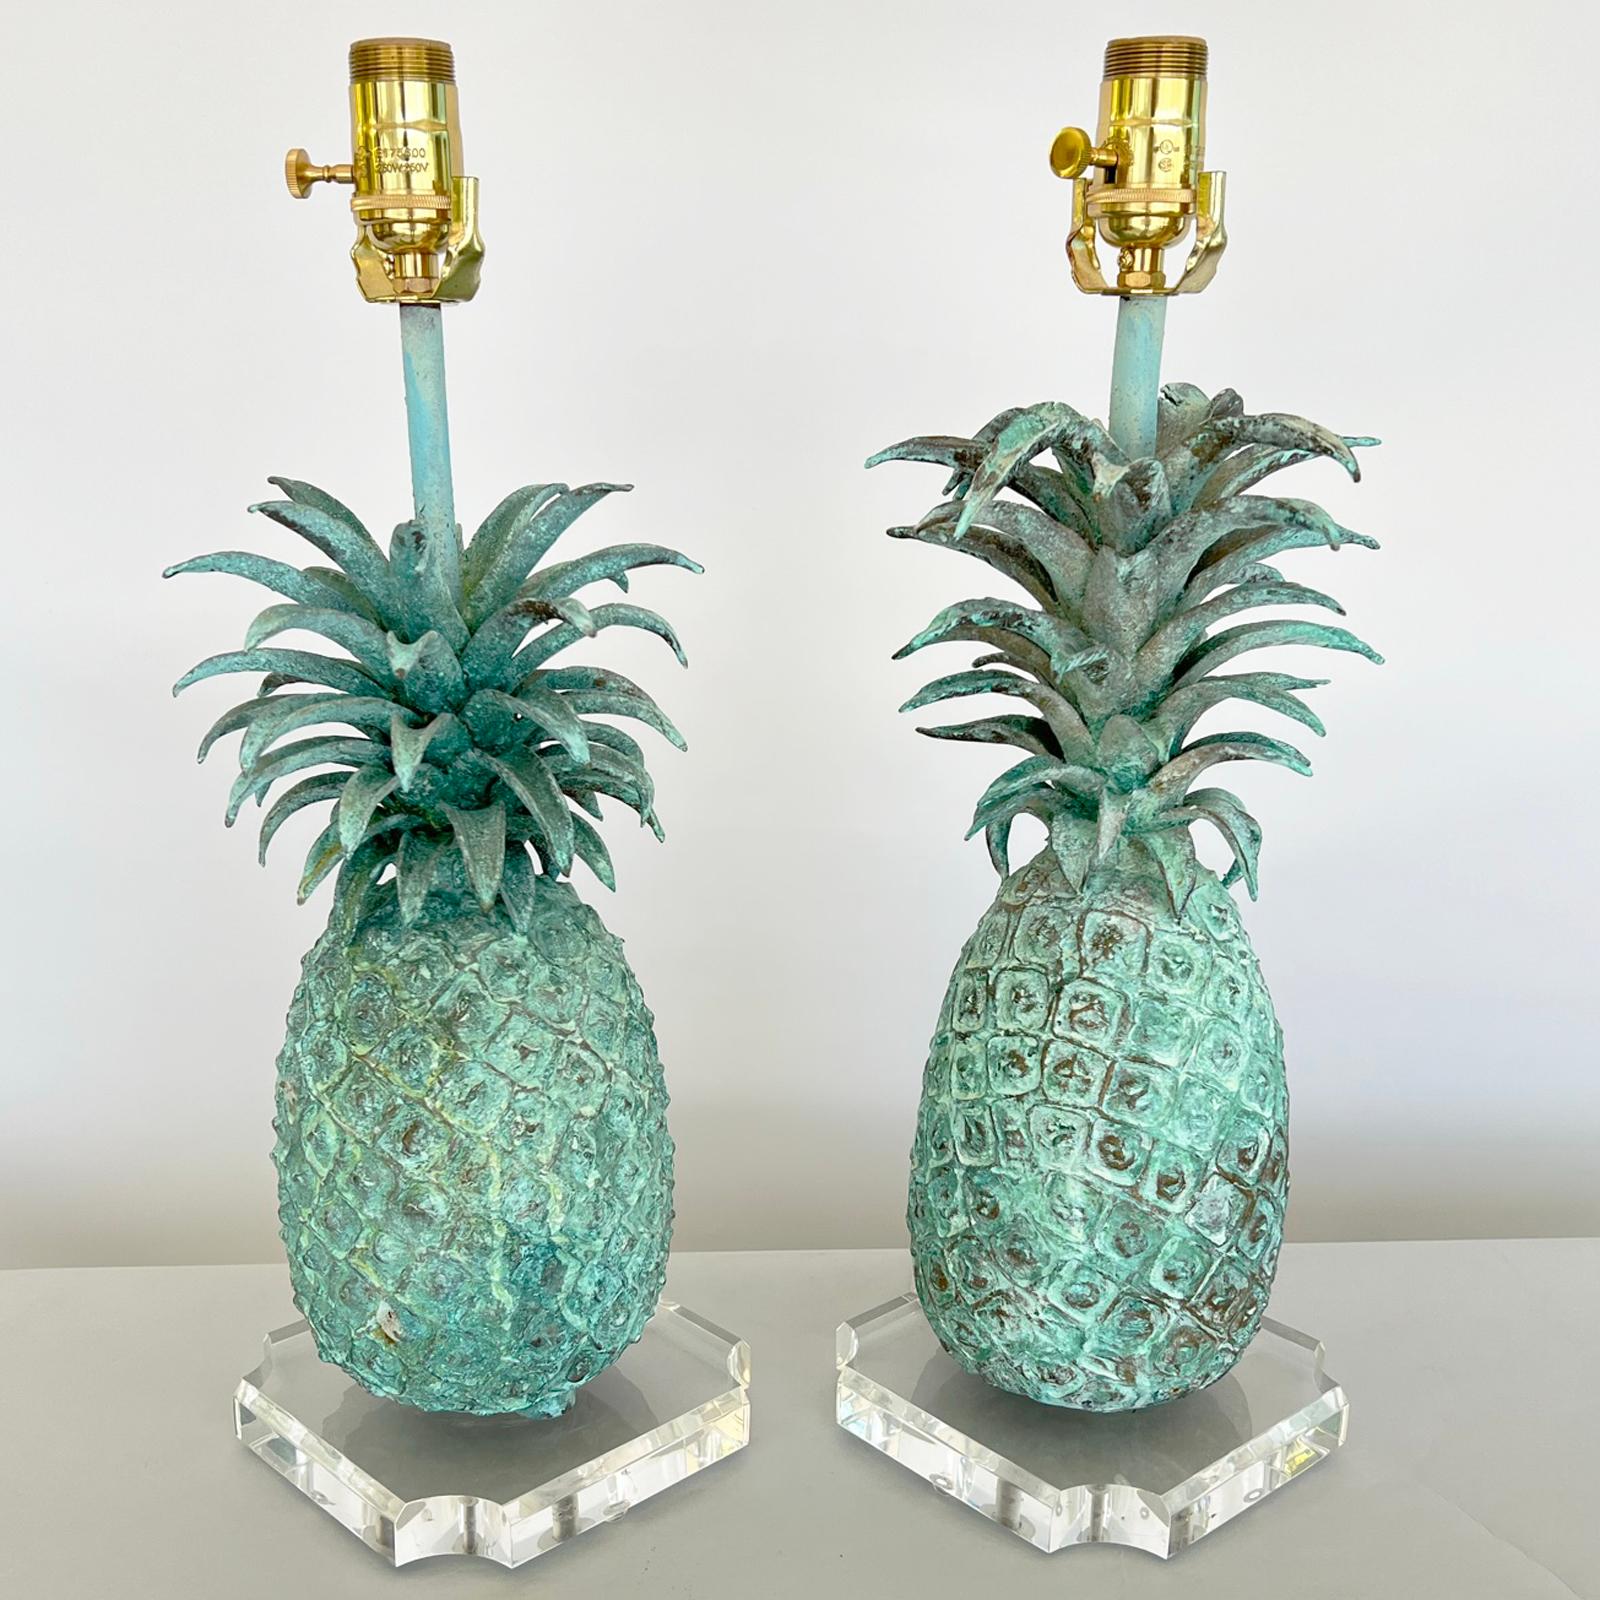 Paar Vintage-Tischlampen, jede in Form einer einzigartigen, gut gegliederten Ananas, gegossen aus massiver Bronze, mit Grünspan-Finish. Die Lampen wurden neu verkabelt und auf neue quadratische Sockel aus Lucite mit abgerundeten Ecken gesetzt.